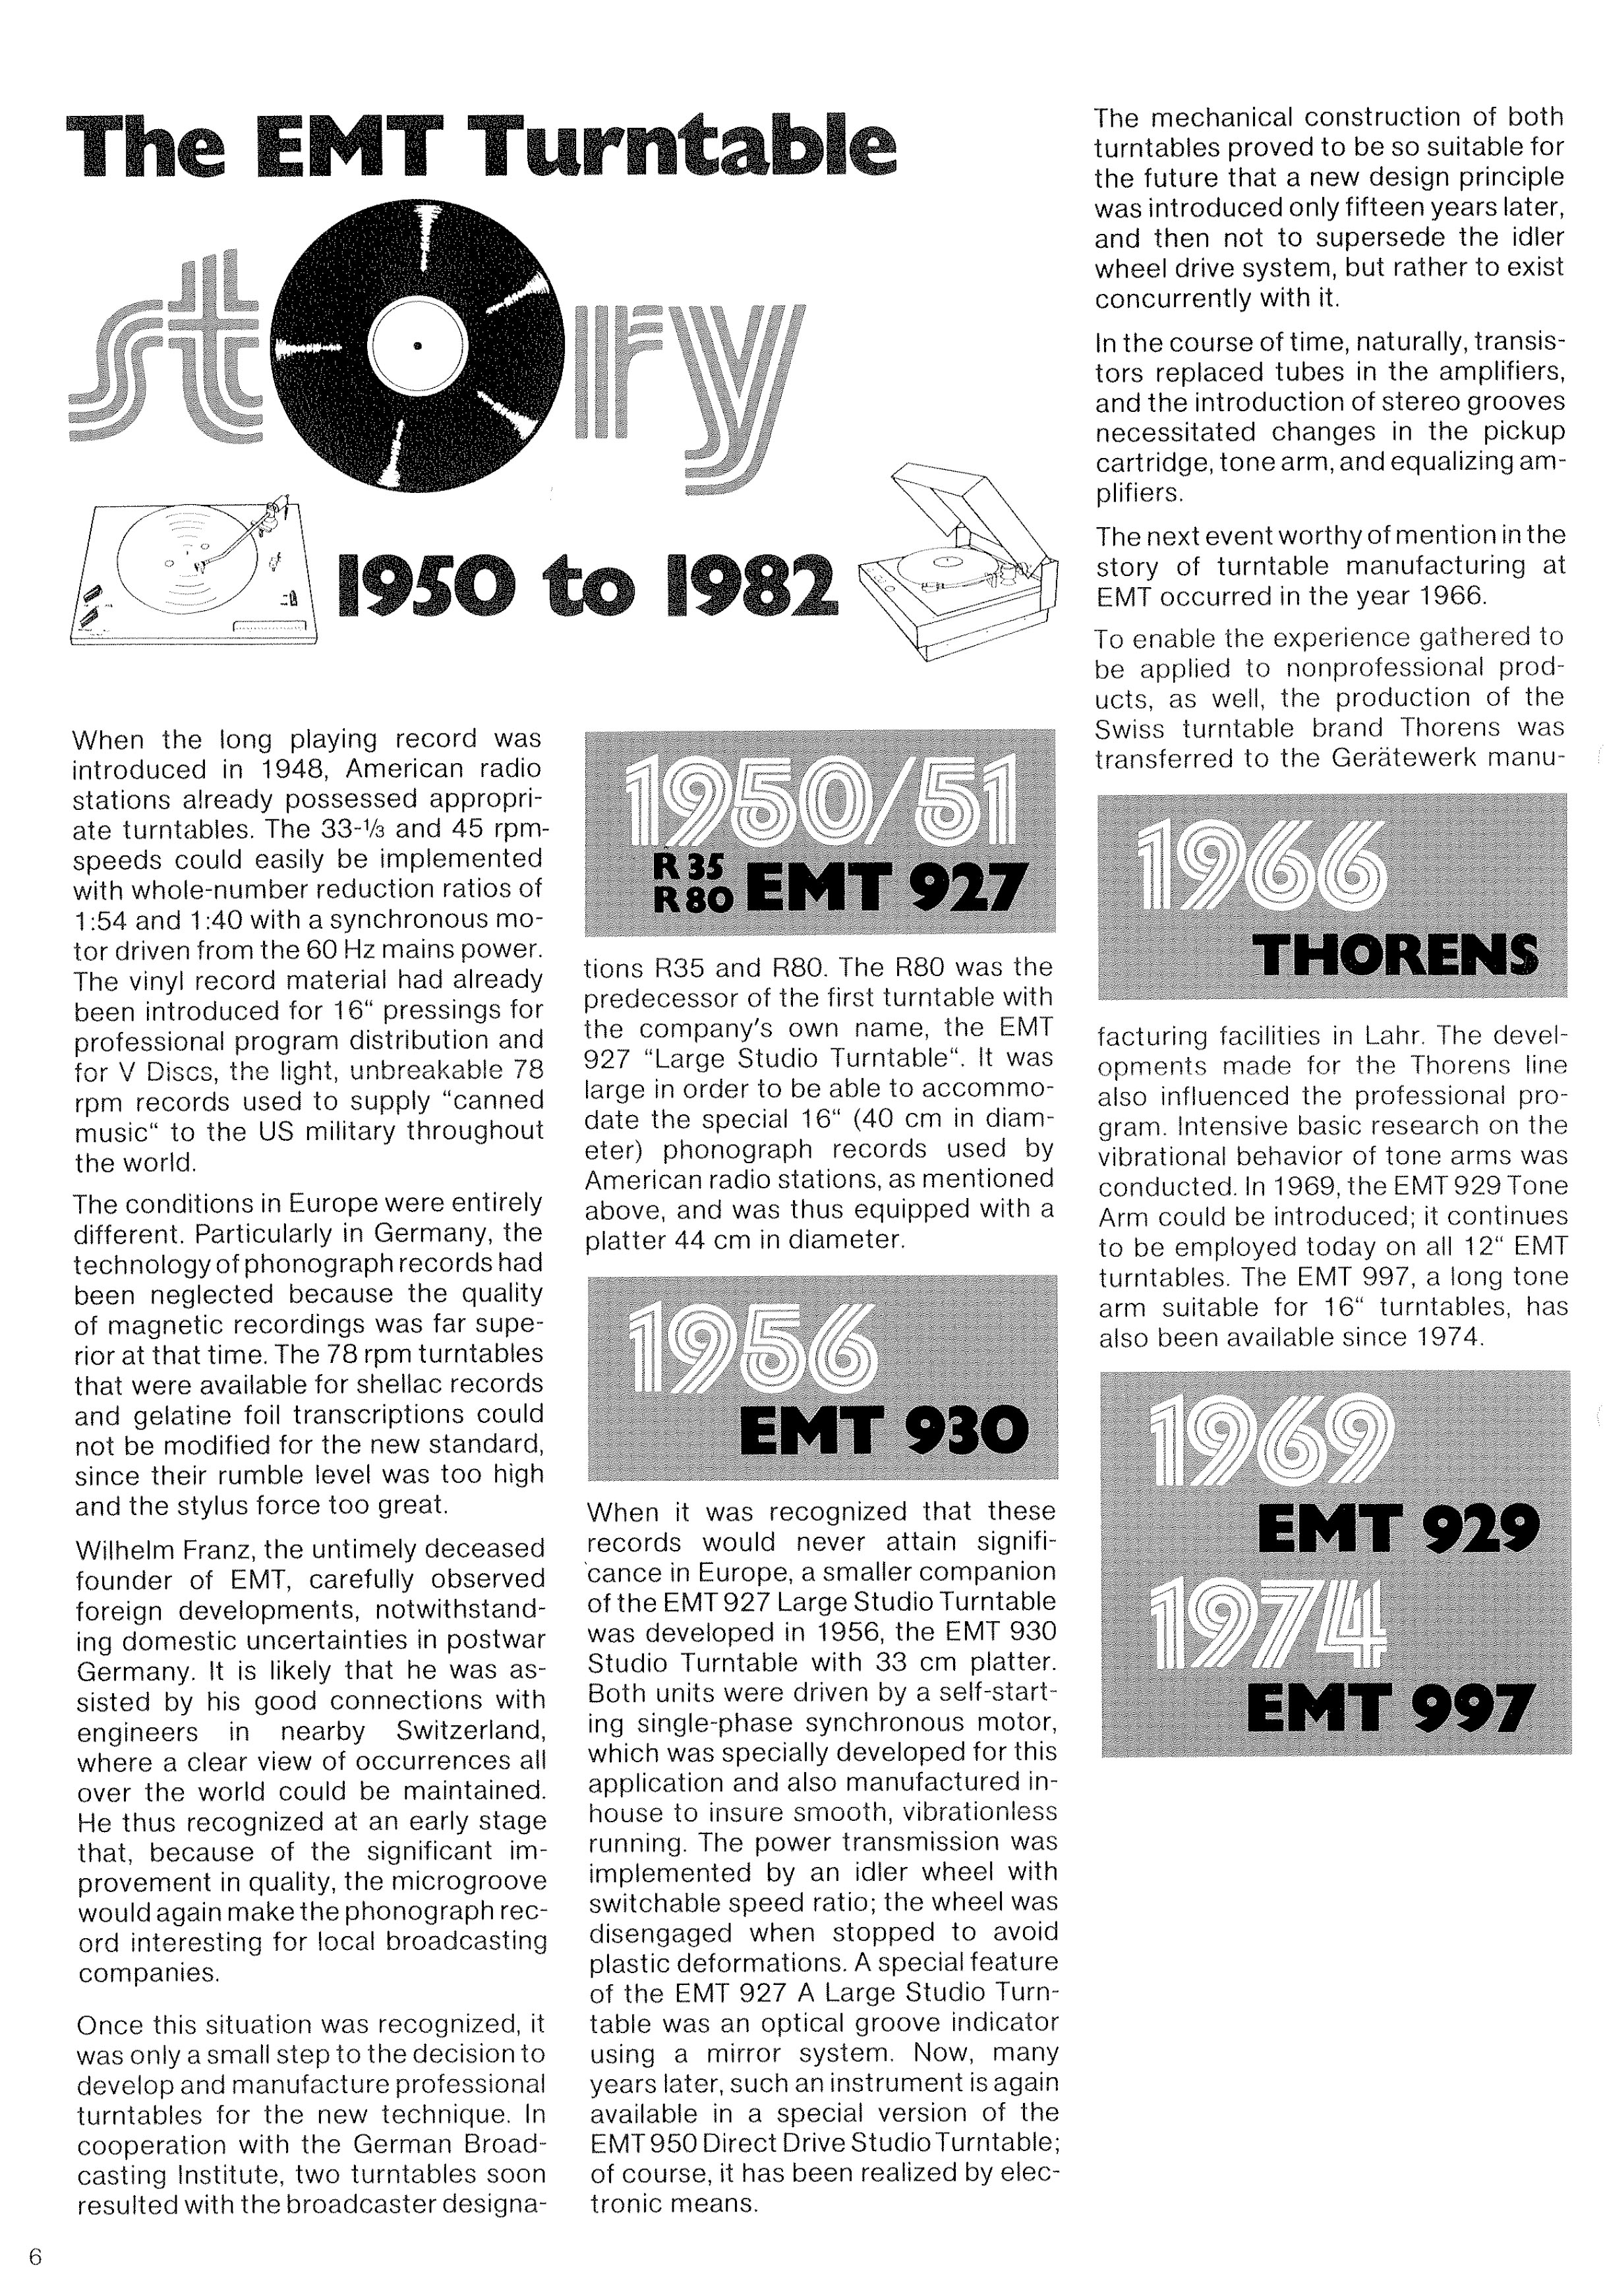 EMT-Turntable-Story-1950-1982-EN-Cover